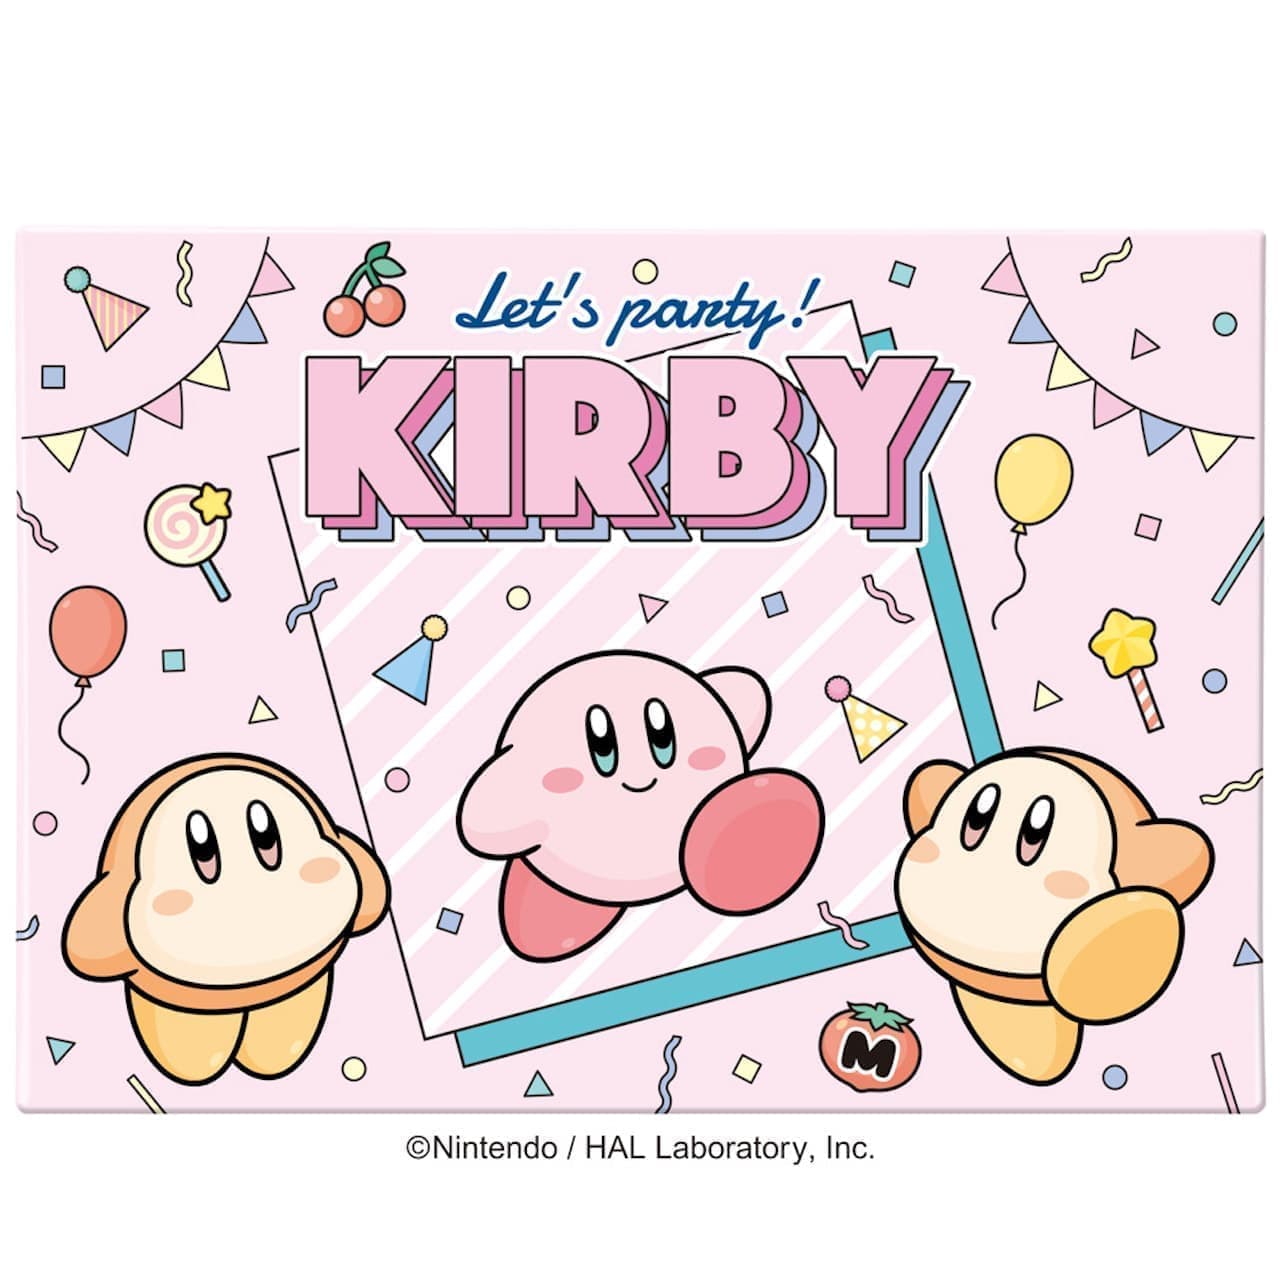 Heart "Kirby's Chocolate Assortment of Stars